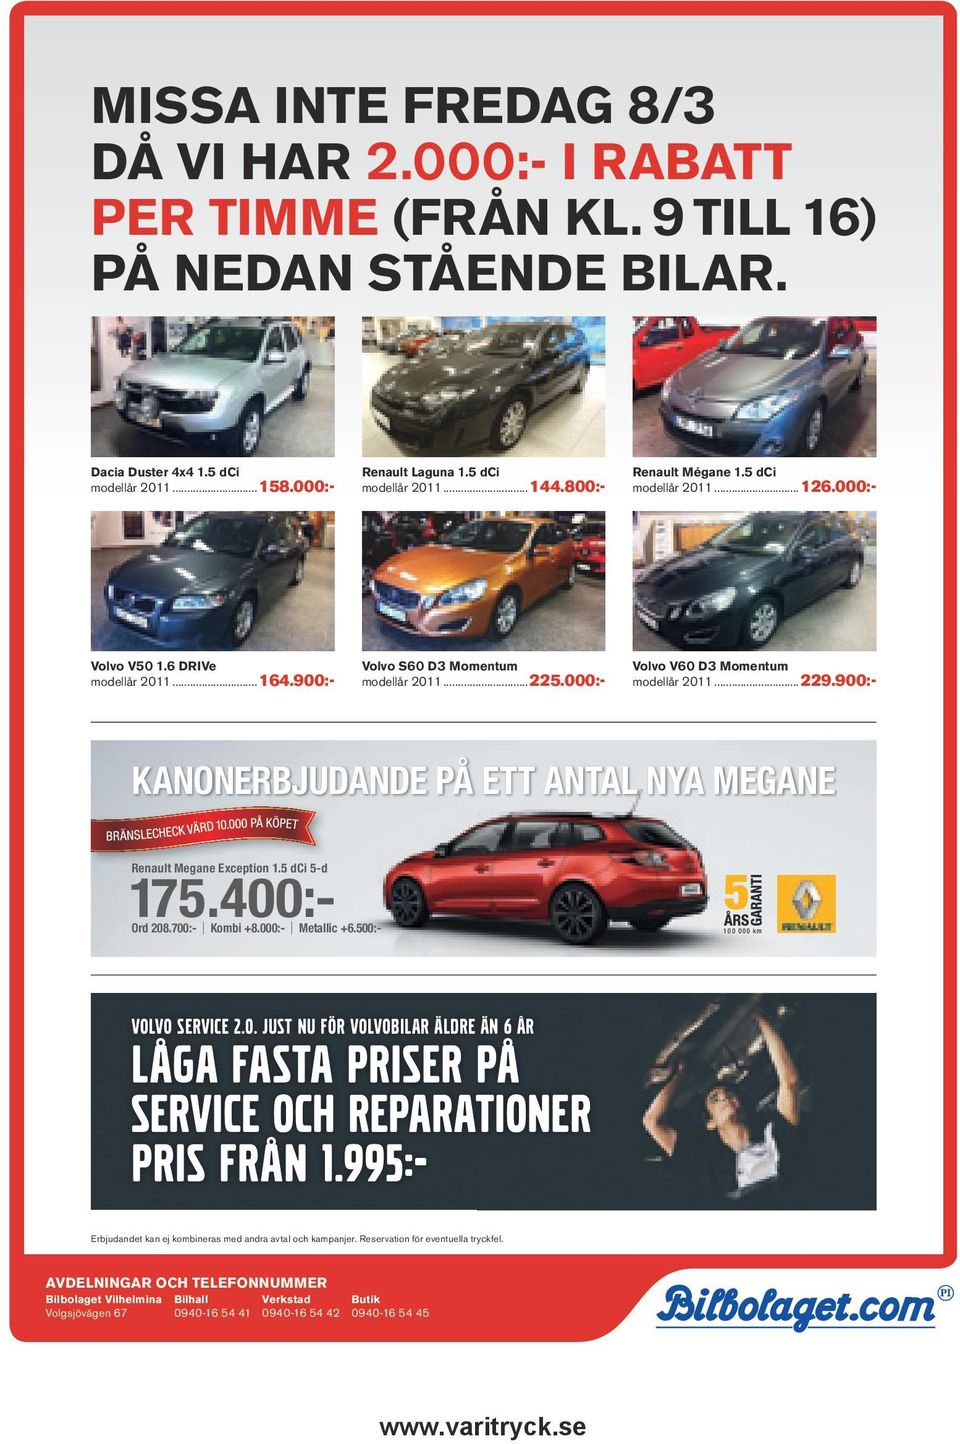 000:- Volvo V60 D3 Momentum modellår 2011...229.900:- KANONERBJUDANDE PÅ ETT ANTAL NYA MEGANE Renault Megane Exception 1.5 dci 5-d 175.400:- Ord 208.700:- Kombi +8.000:- Metallic +6.